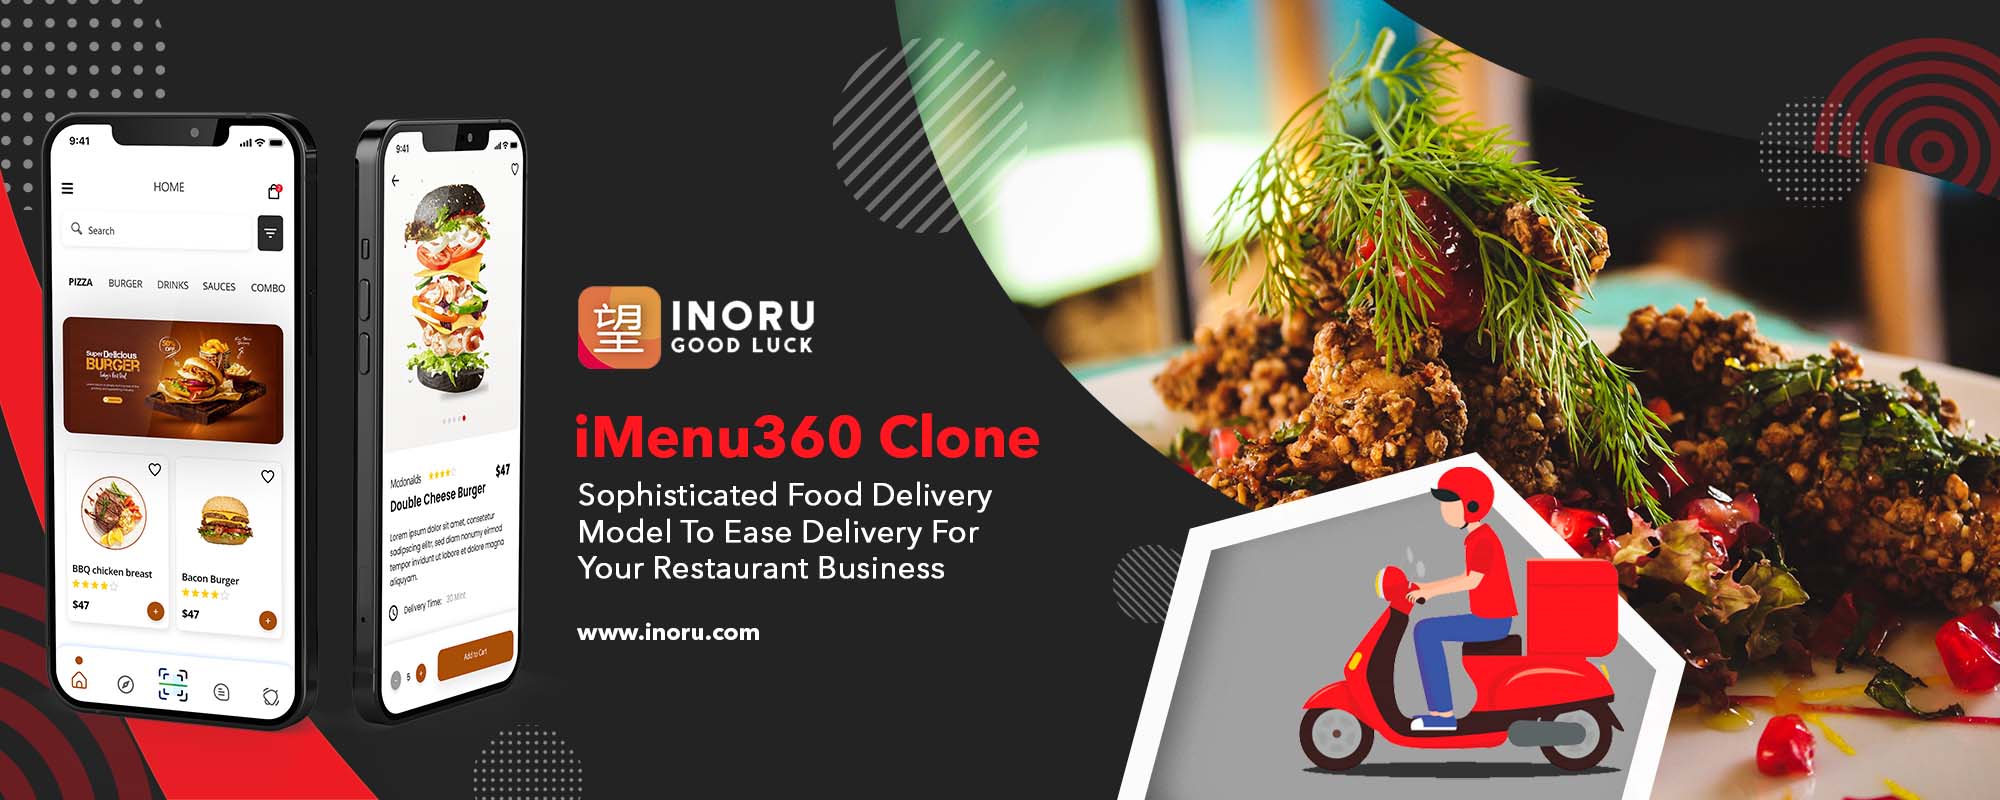 iMenu360 Alternative, iMenu360 Clone,Online Food Delivery,Delivery Restaurant near me,Food Delivery App, Ubereats Clone